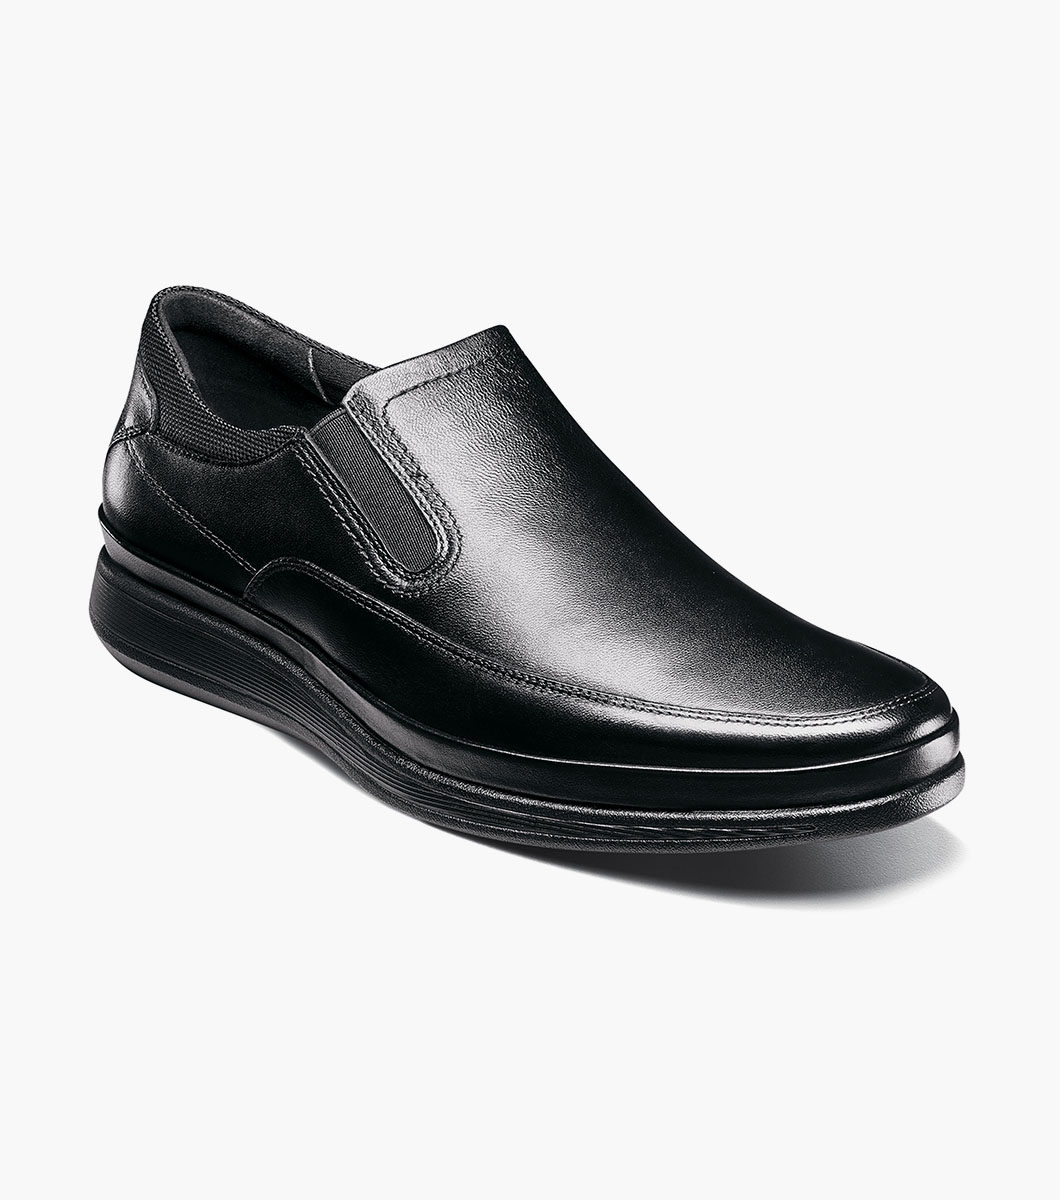 Motion Moc Toe Slip On Men’s Casual Shoes | Florsheim.com